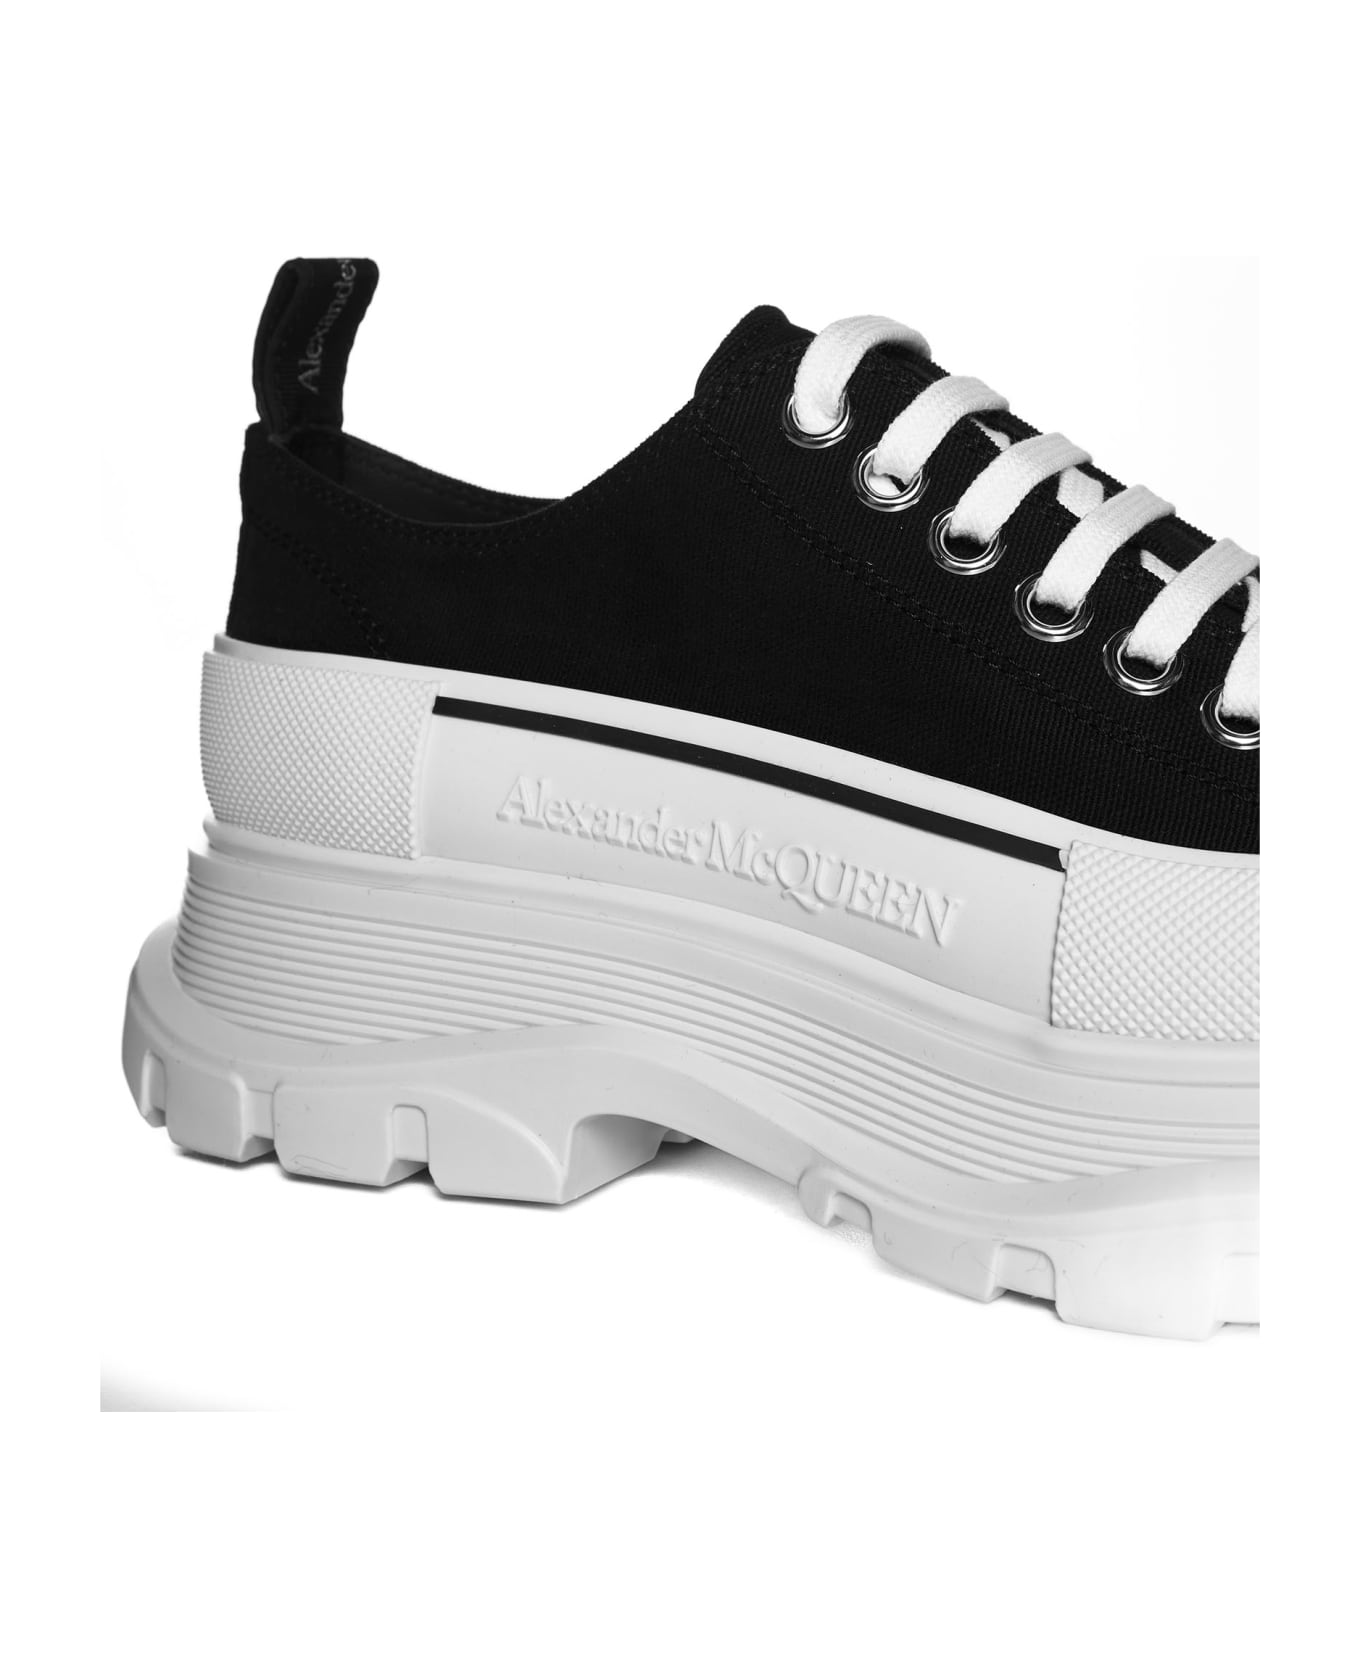 Alexander McQueen Sneaker Tread Slick - Black/white スニーカー